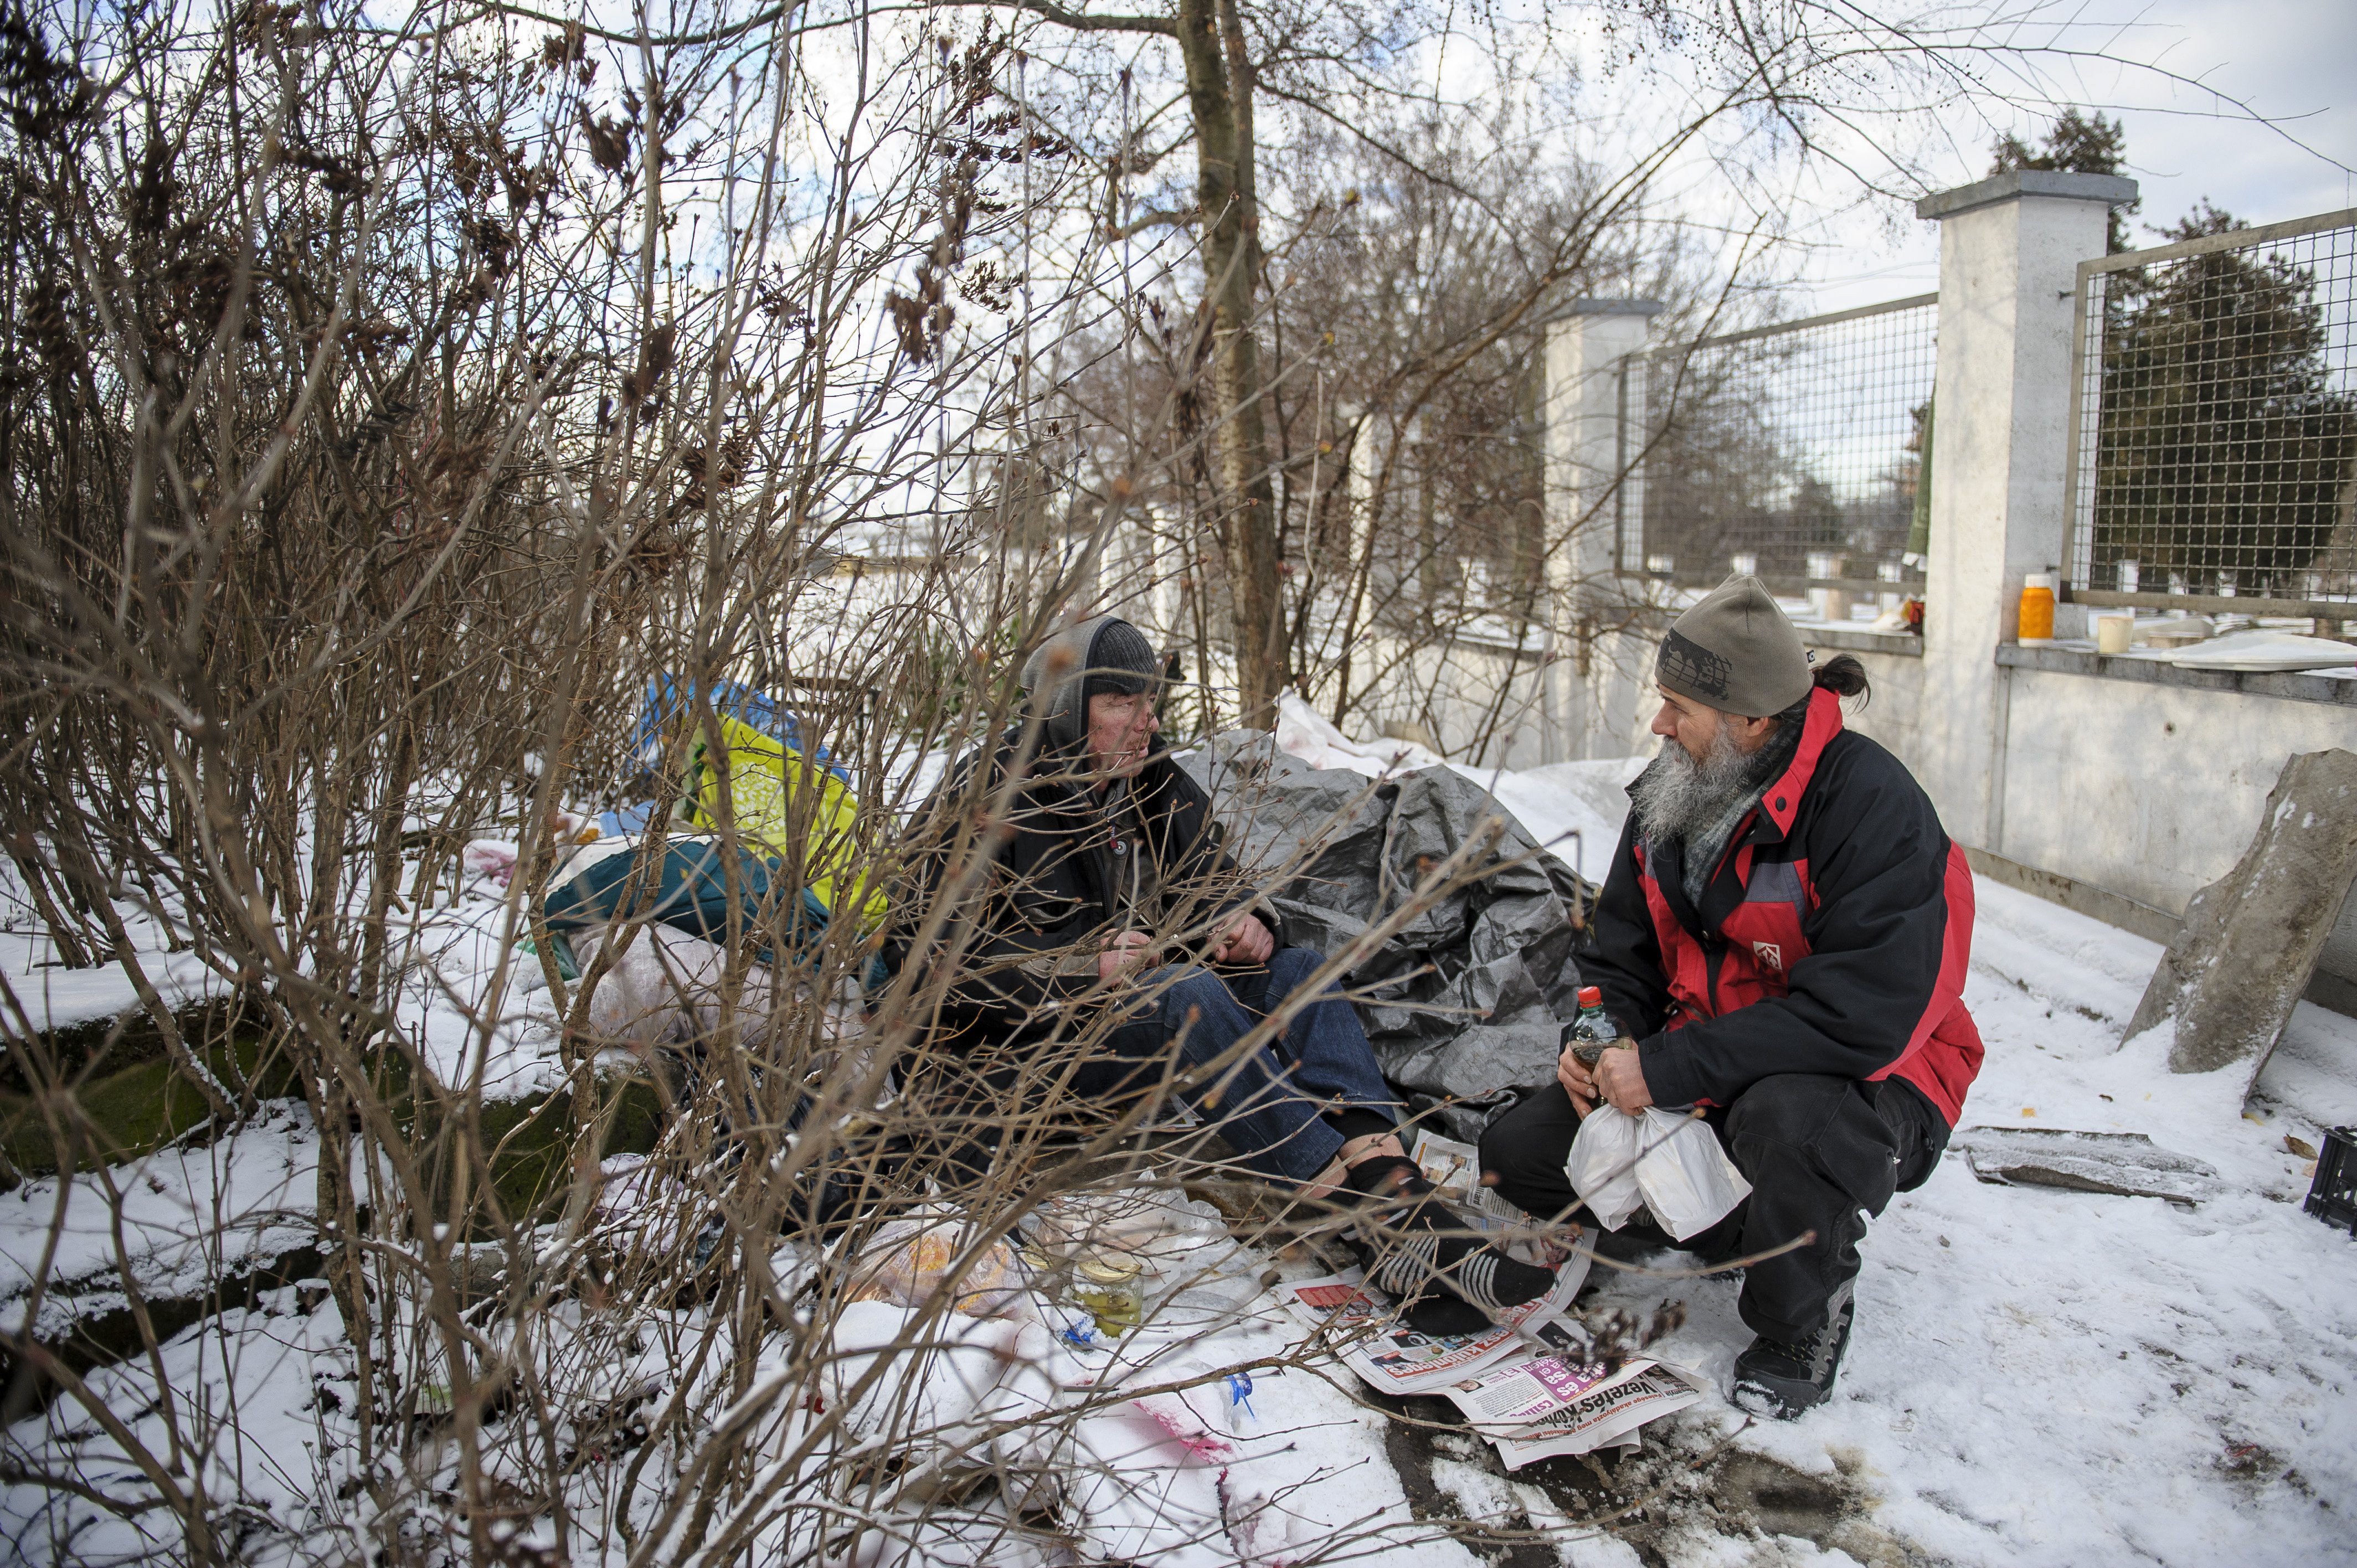 Szemenyei György, a hajléktalanokat segítő Refomix Nonprofit Kft. utcai szociális segítője (j) egy hajléktalan férfivel beszélget Debrecenben, a Vágóhíd utcai felüljáró közelében 2017. január 5-én.